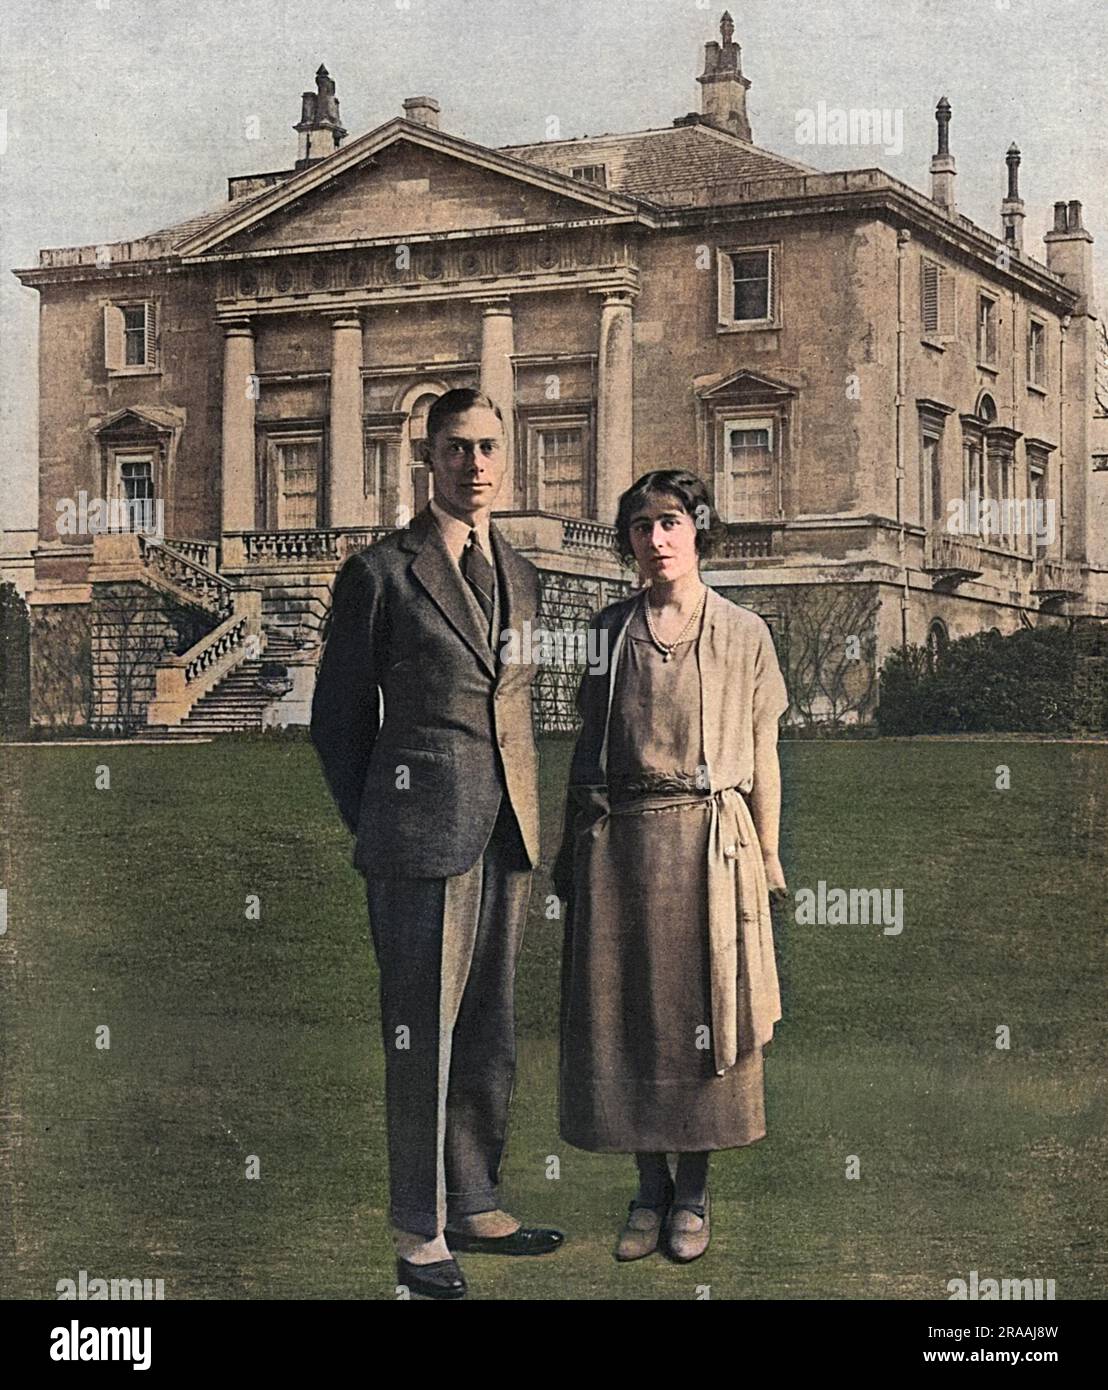 Le duc et la duchesse de York, le futur roi George VI et la reine Elizabeth (la reine mère), photographiés superposés devant le White Lodge dans le Grand parc de Richmond, leur première maison après leur mariage en avril 1923. Date: 1923 Banque D'Images